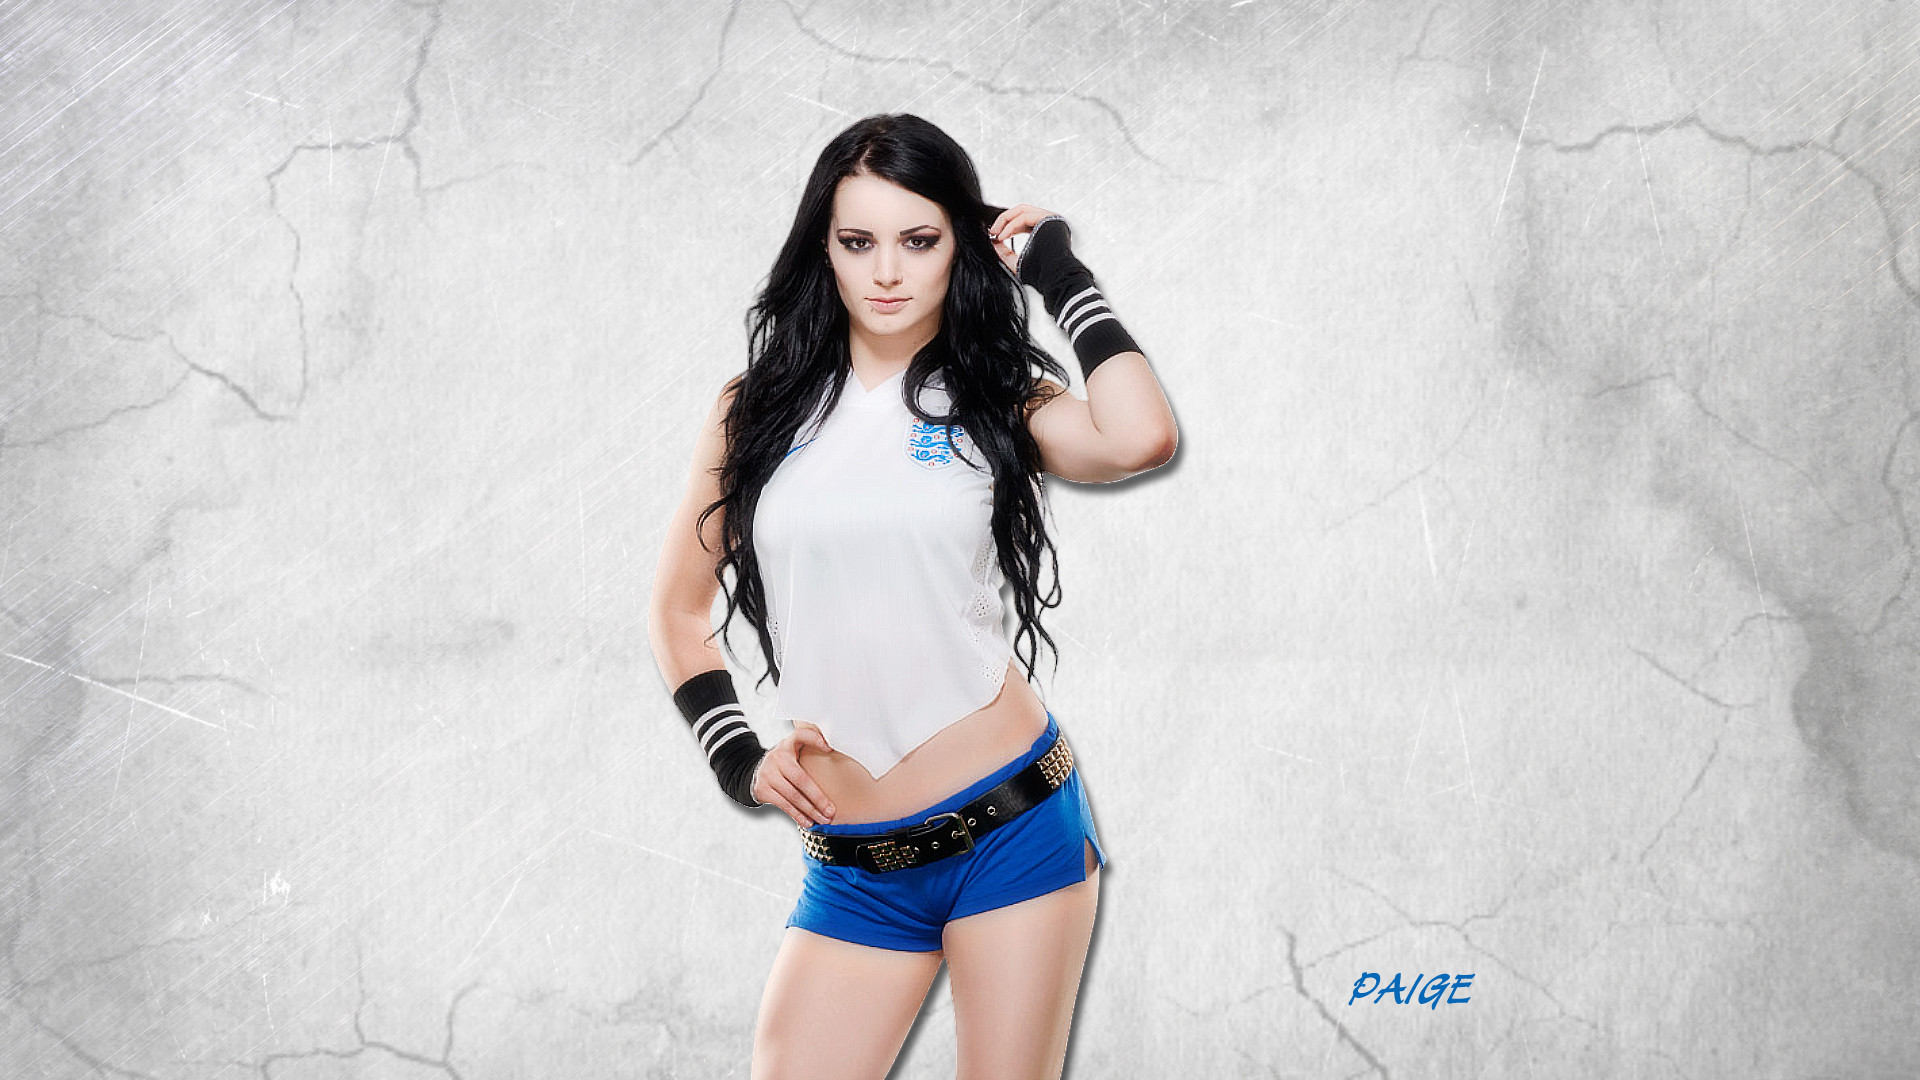 Paige HD Images 7 #PaigeHDImages #Paige #wwe #wrestling #divas #wwedivas